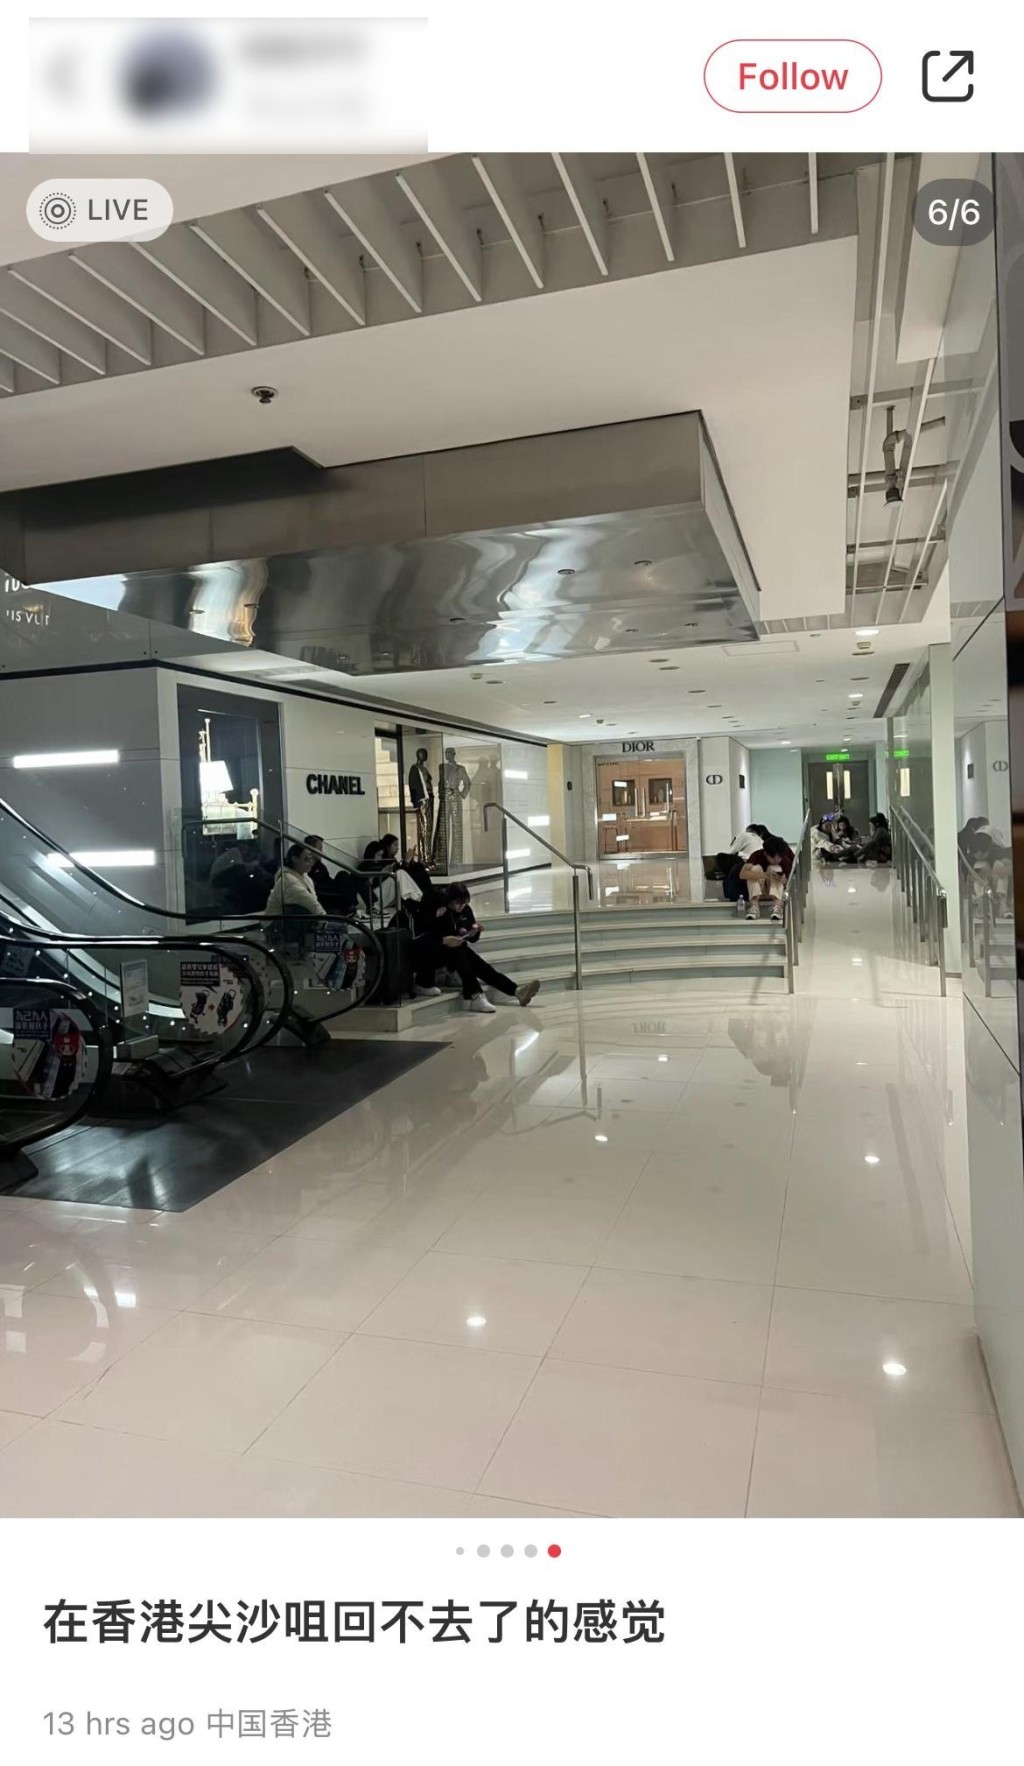 有旅客在海港城商场靠着墙坐在地板上，名店CHANEL门外亦出现滞留旅客的身影。小红书图片